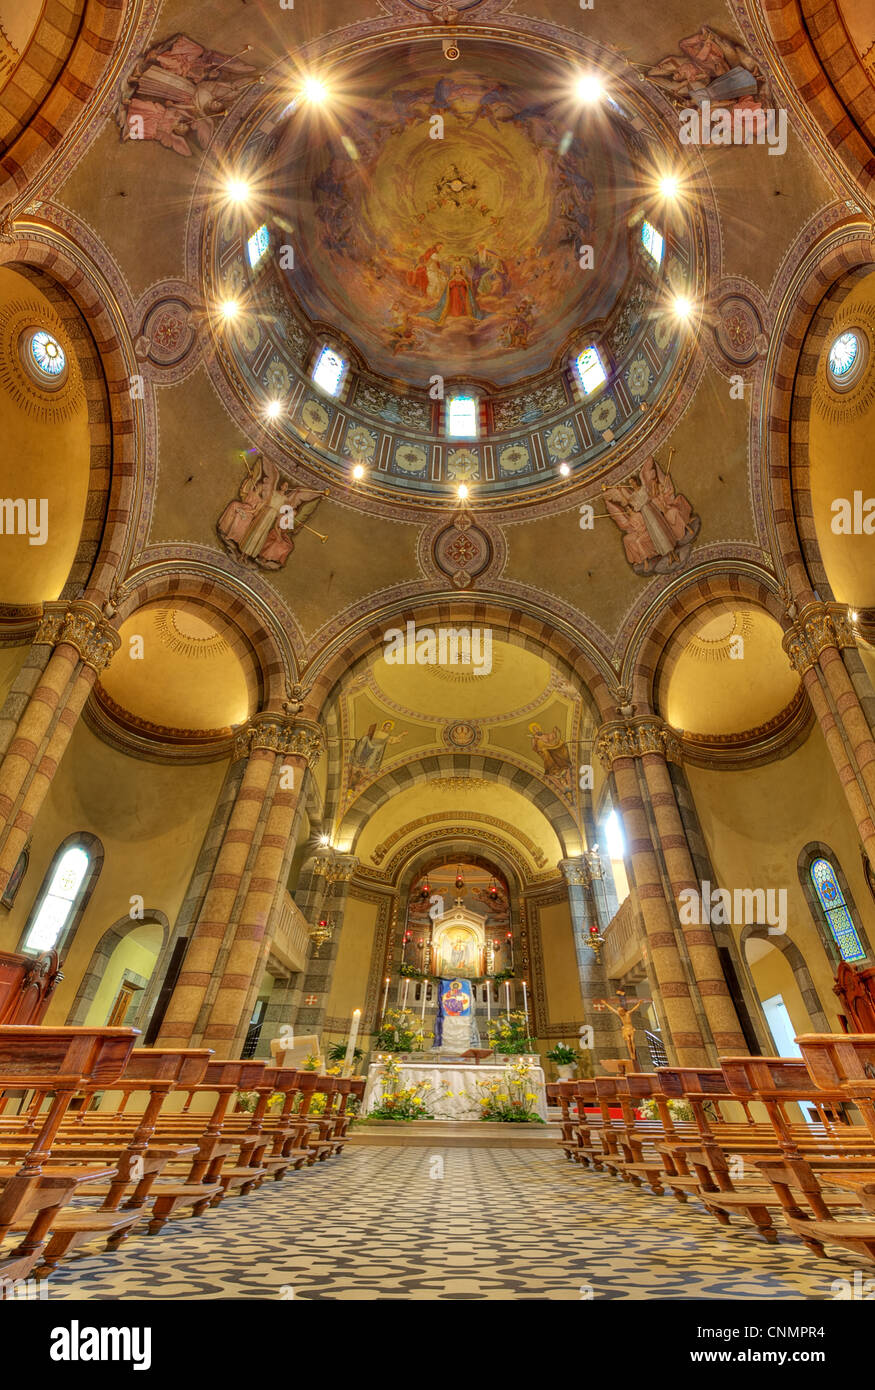 Vertikal ausgerichtete Bild der Madonna Moretta katholische Kirche Innenansicht in Alba, Norditalien. Stockfoto